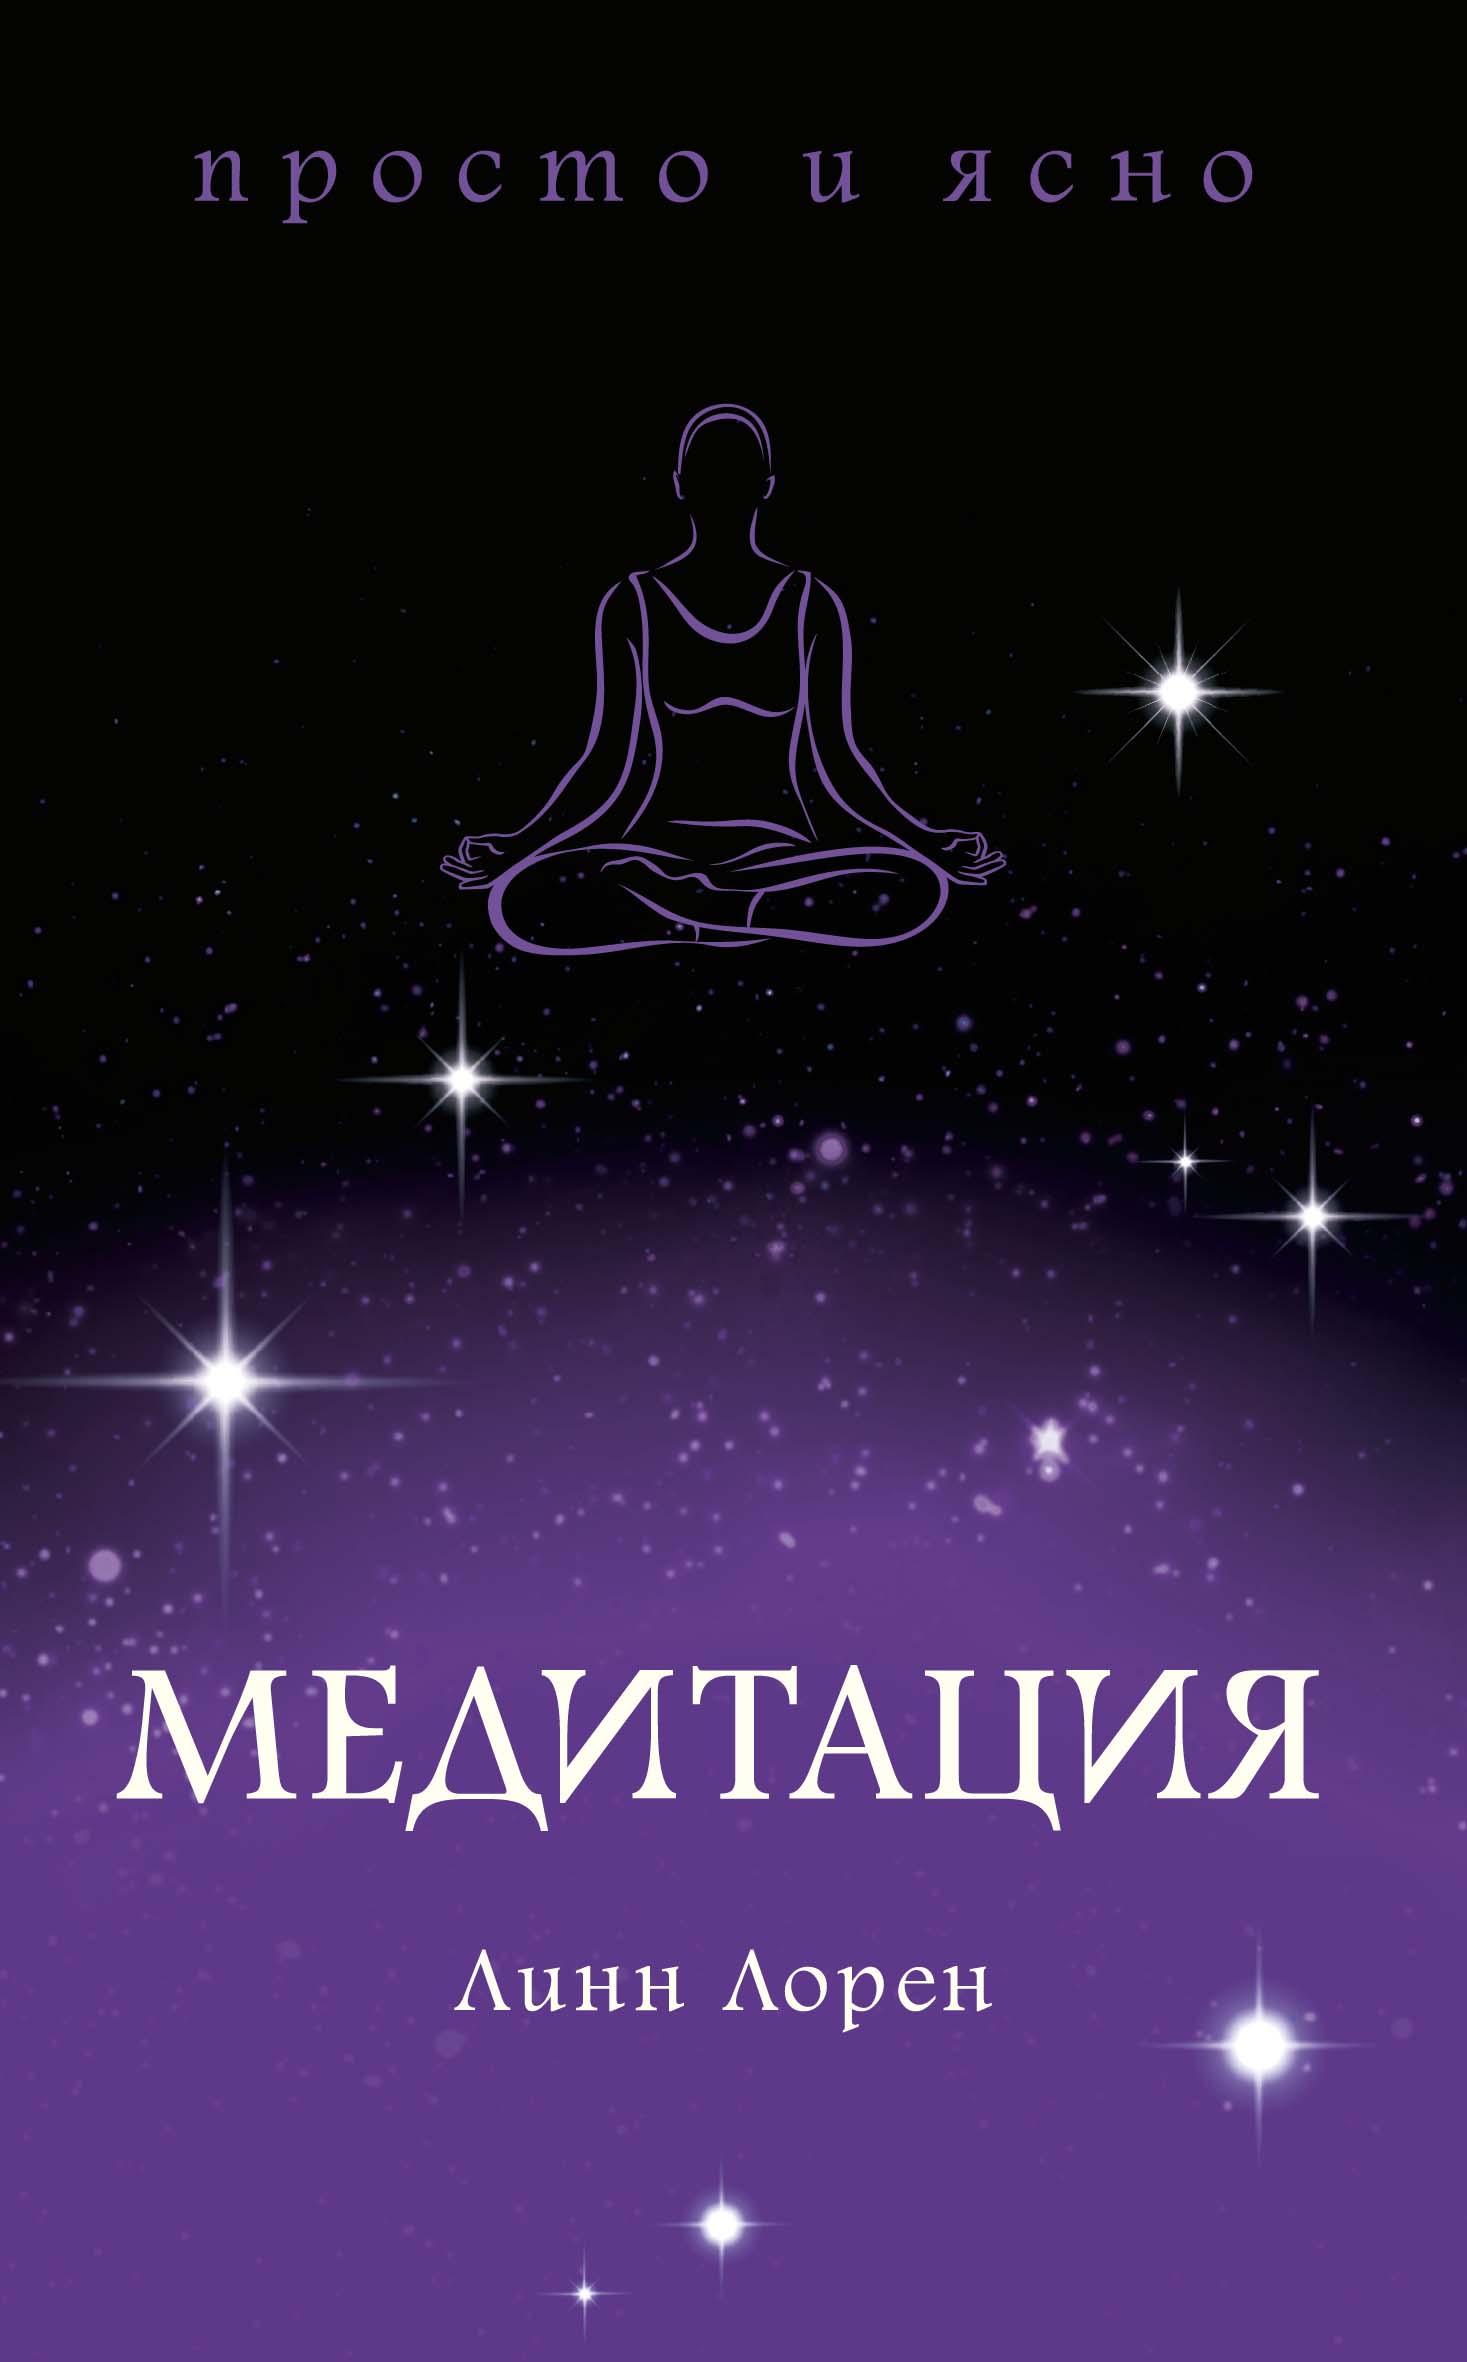 Медитация освобождающая медитация взгляд – медитация – действие